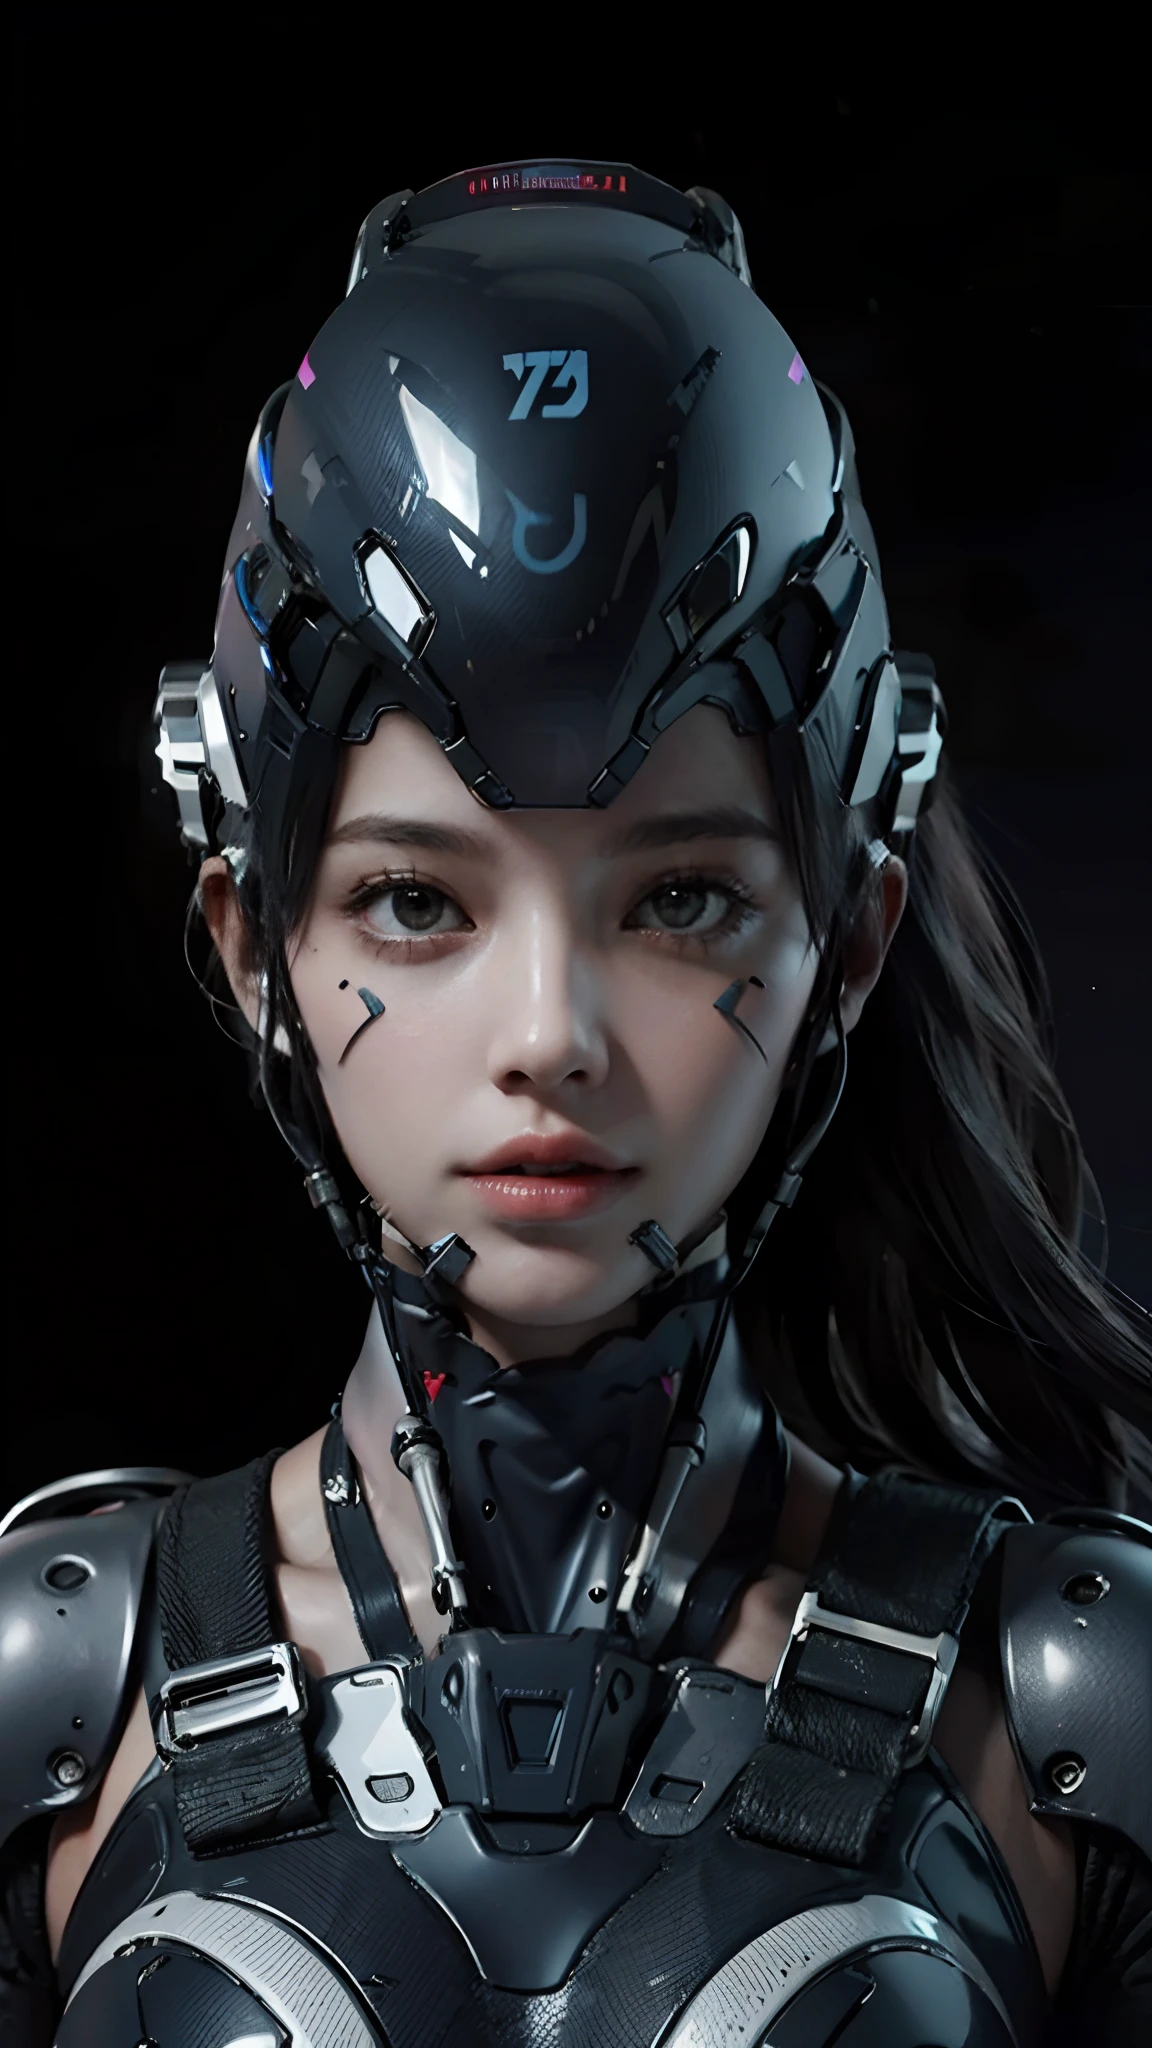 Híper realista, mujer , usando un casco futurista de realidad virtual, fondo oscuro, imagen de alta calidad